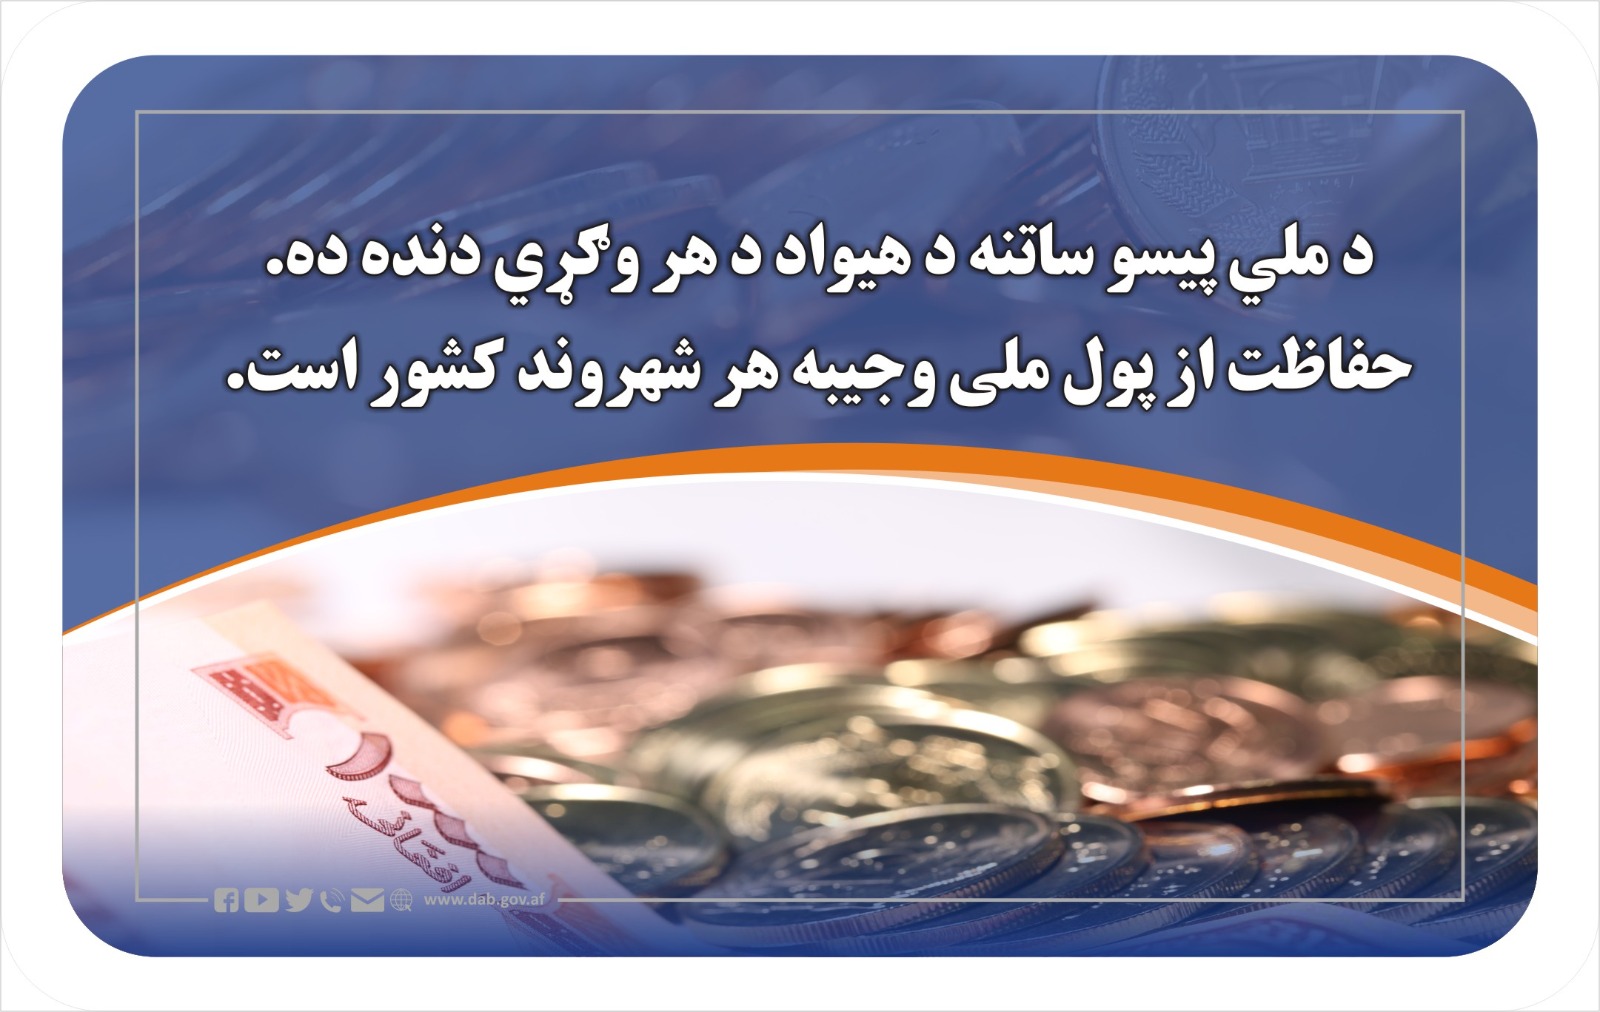 حفاظت از پول ملی وجیبه هر شهروند کشور است